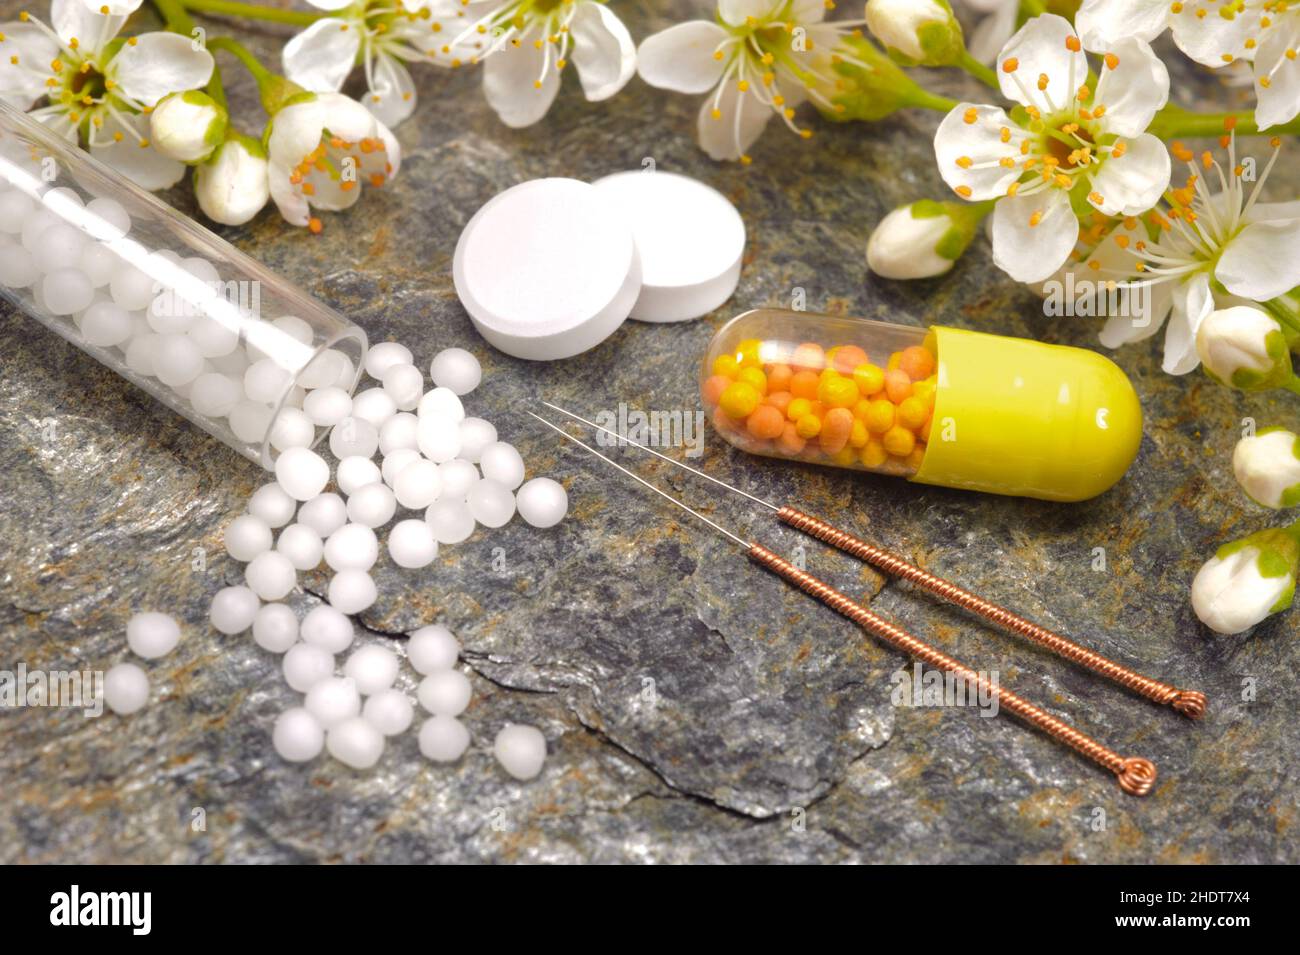 alternative medicine, school medication, alternative medicines, medications Stock Photo